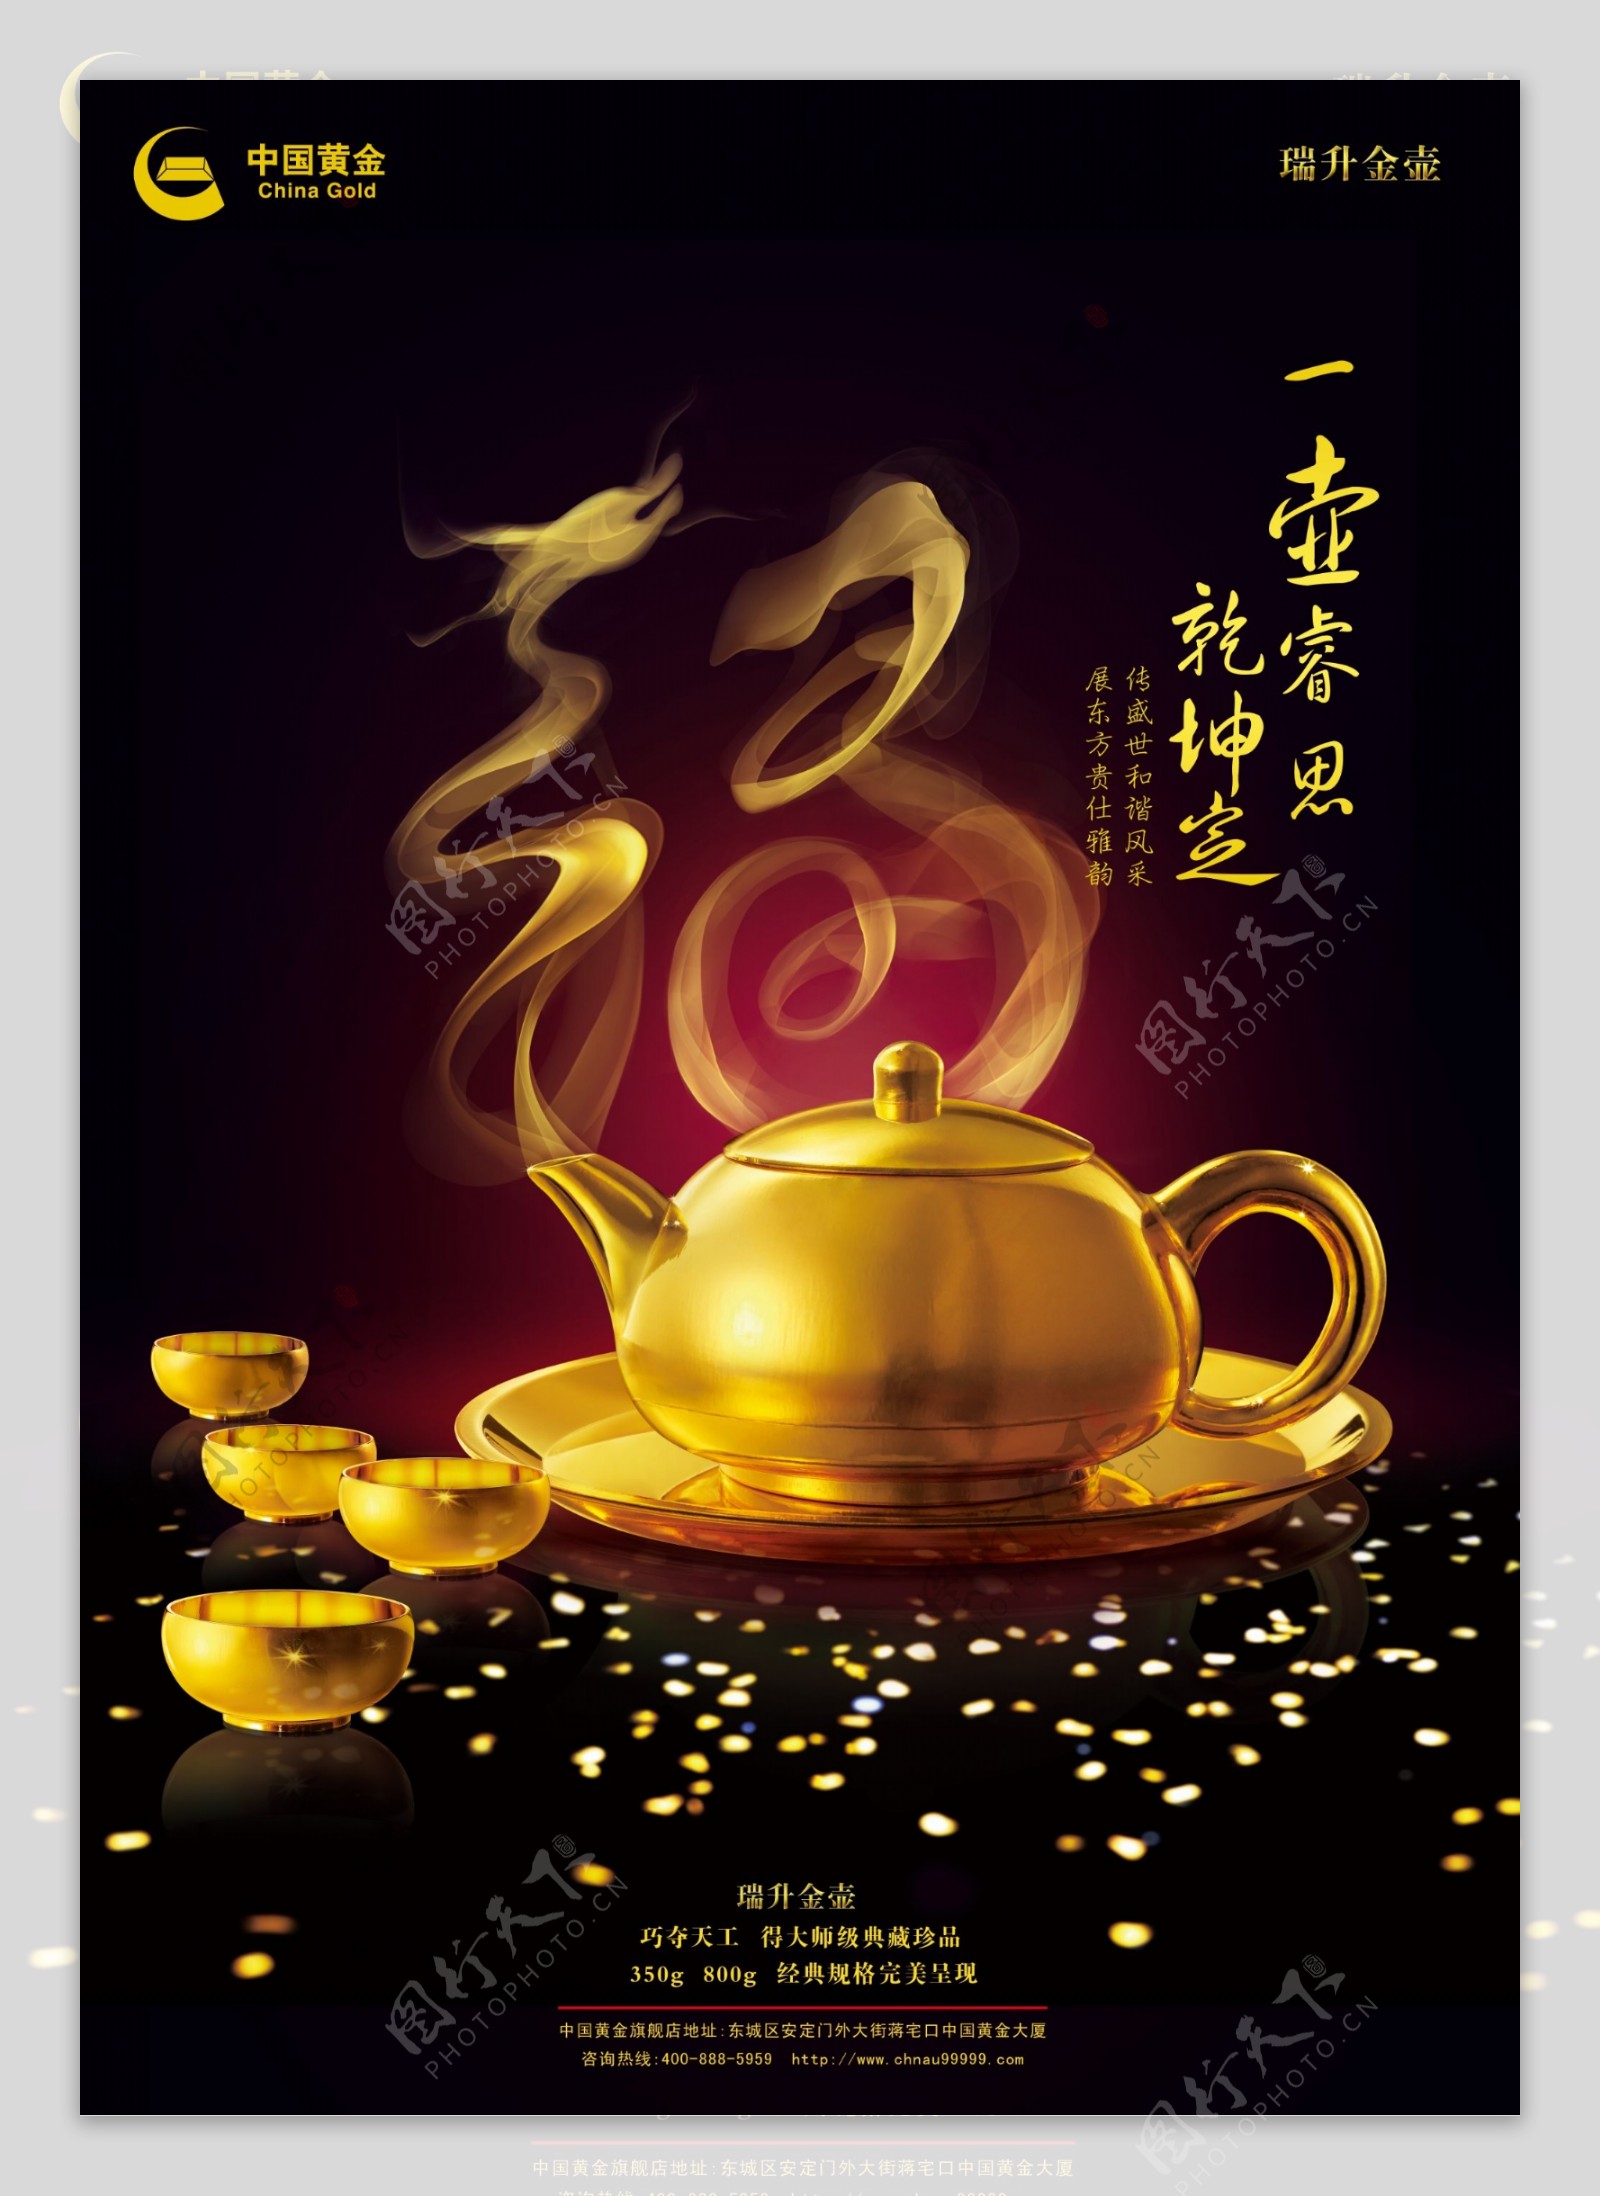 中国黄金图片